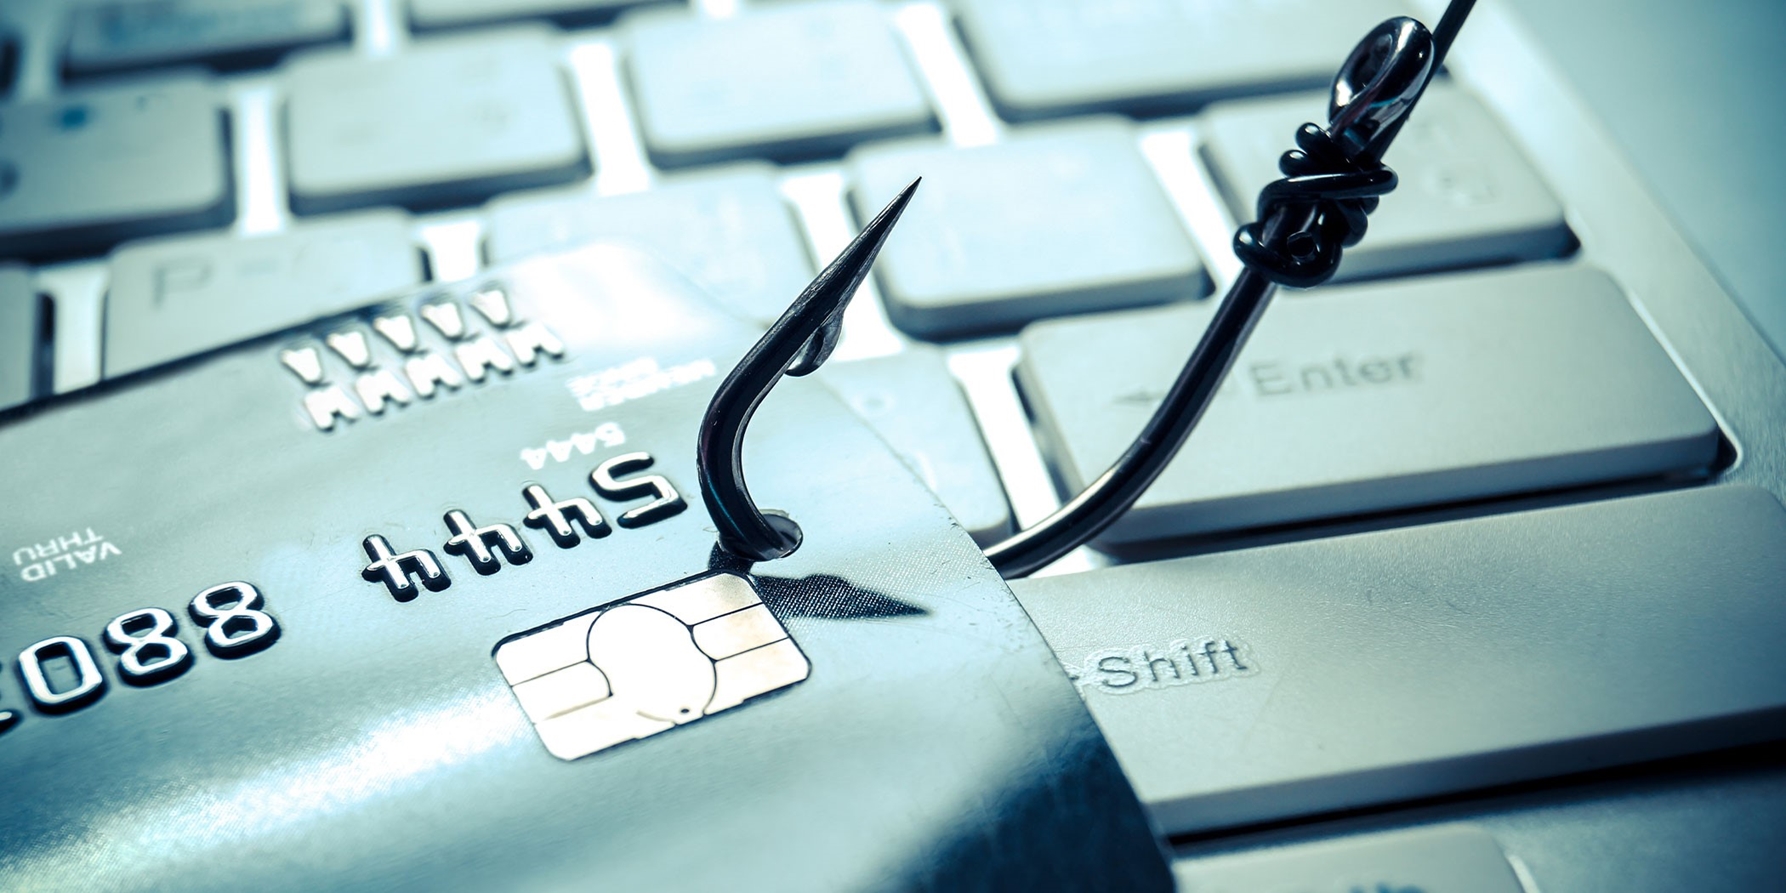 Vorsicht vor Cyberattacken – Malvertising, Phishing und Malware können grossen Schaden anrichten.